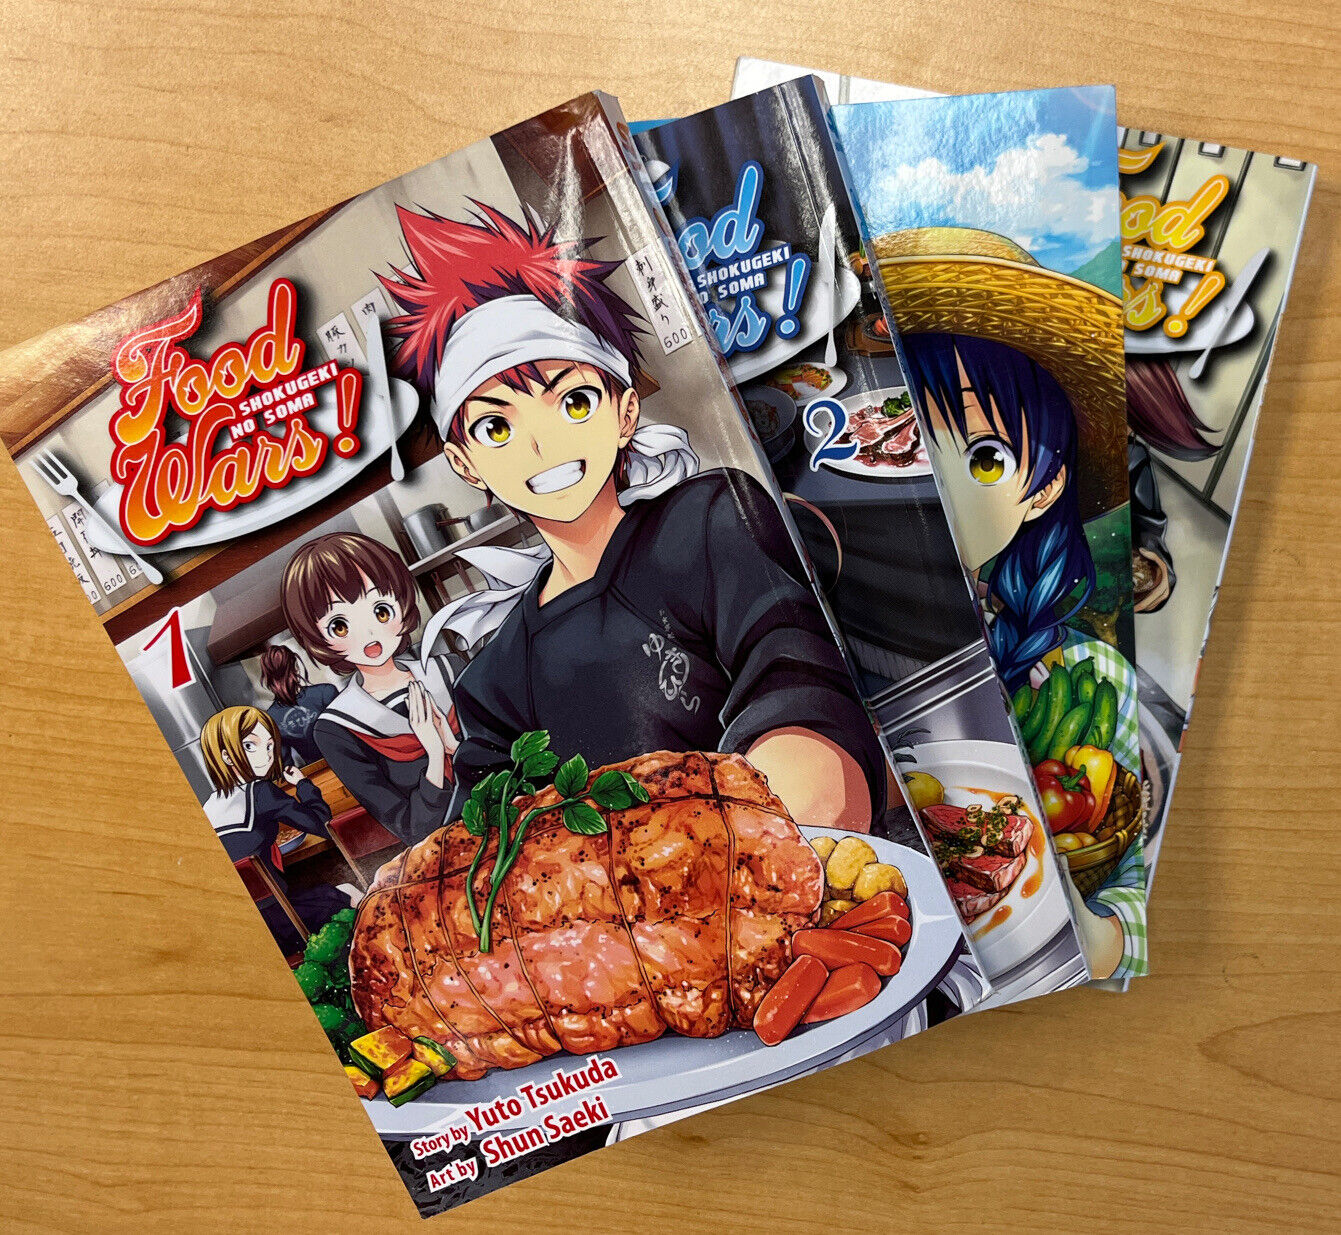 Food Wars Manga Vol. 1-4 (English), Shokugeki No Soma, Paperback